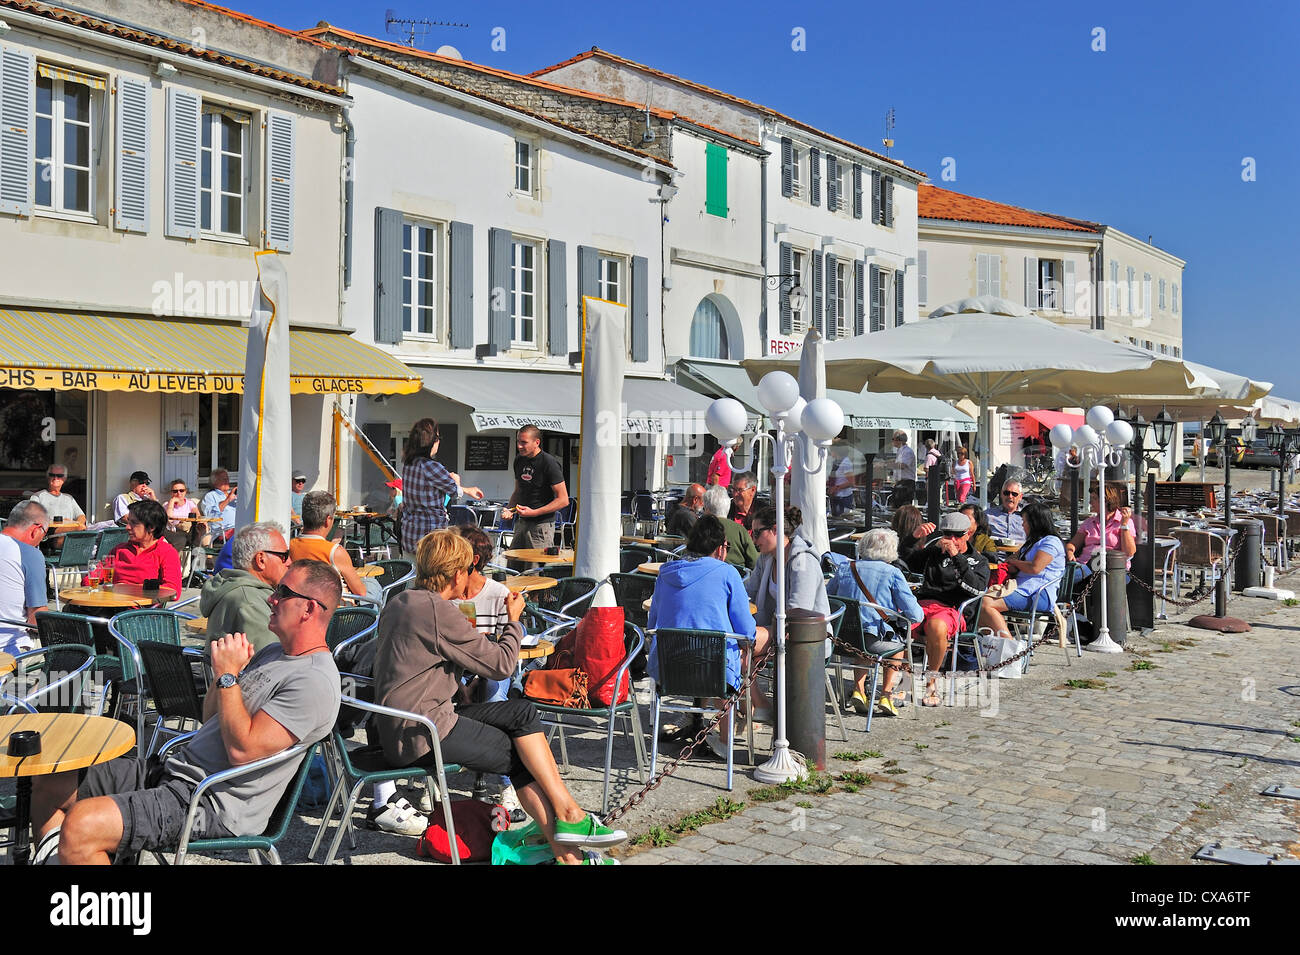 Tourists at pavement cafe in the port at Saint-Martin-de-Ré on the island Ile de Ré, Charente-Maritime, France Stock Photo